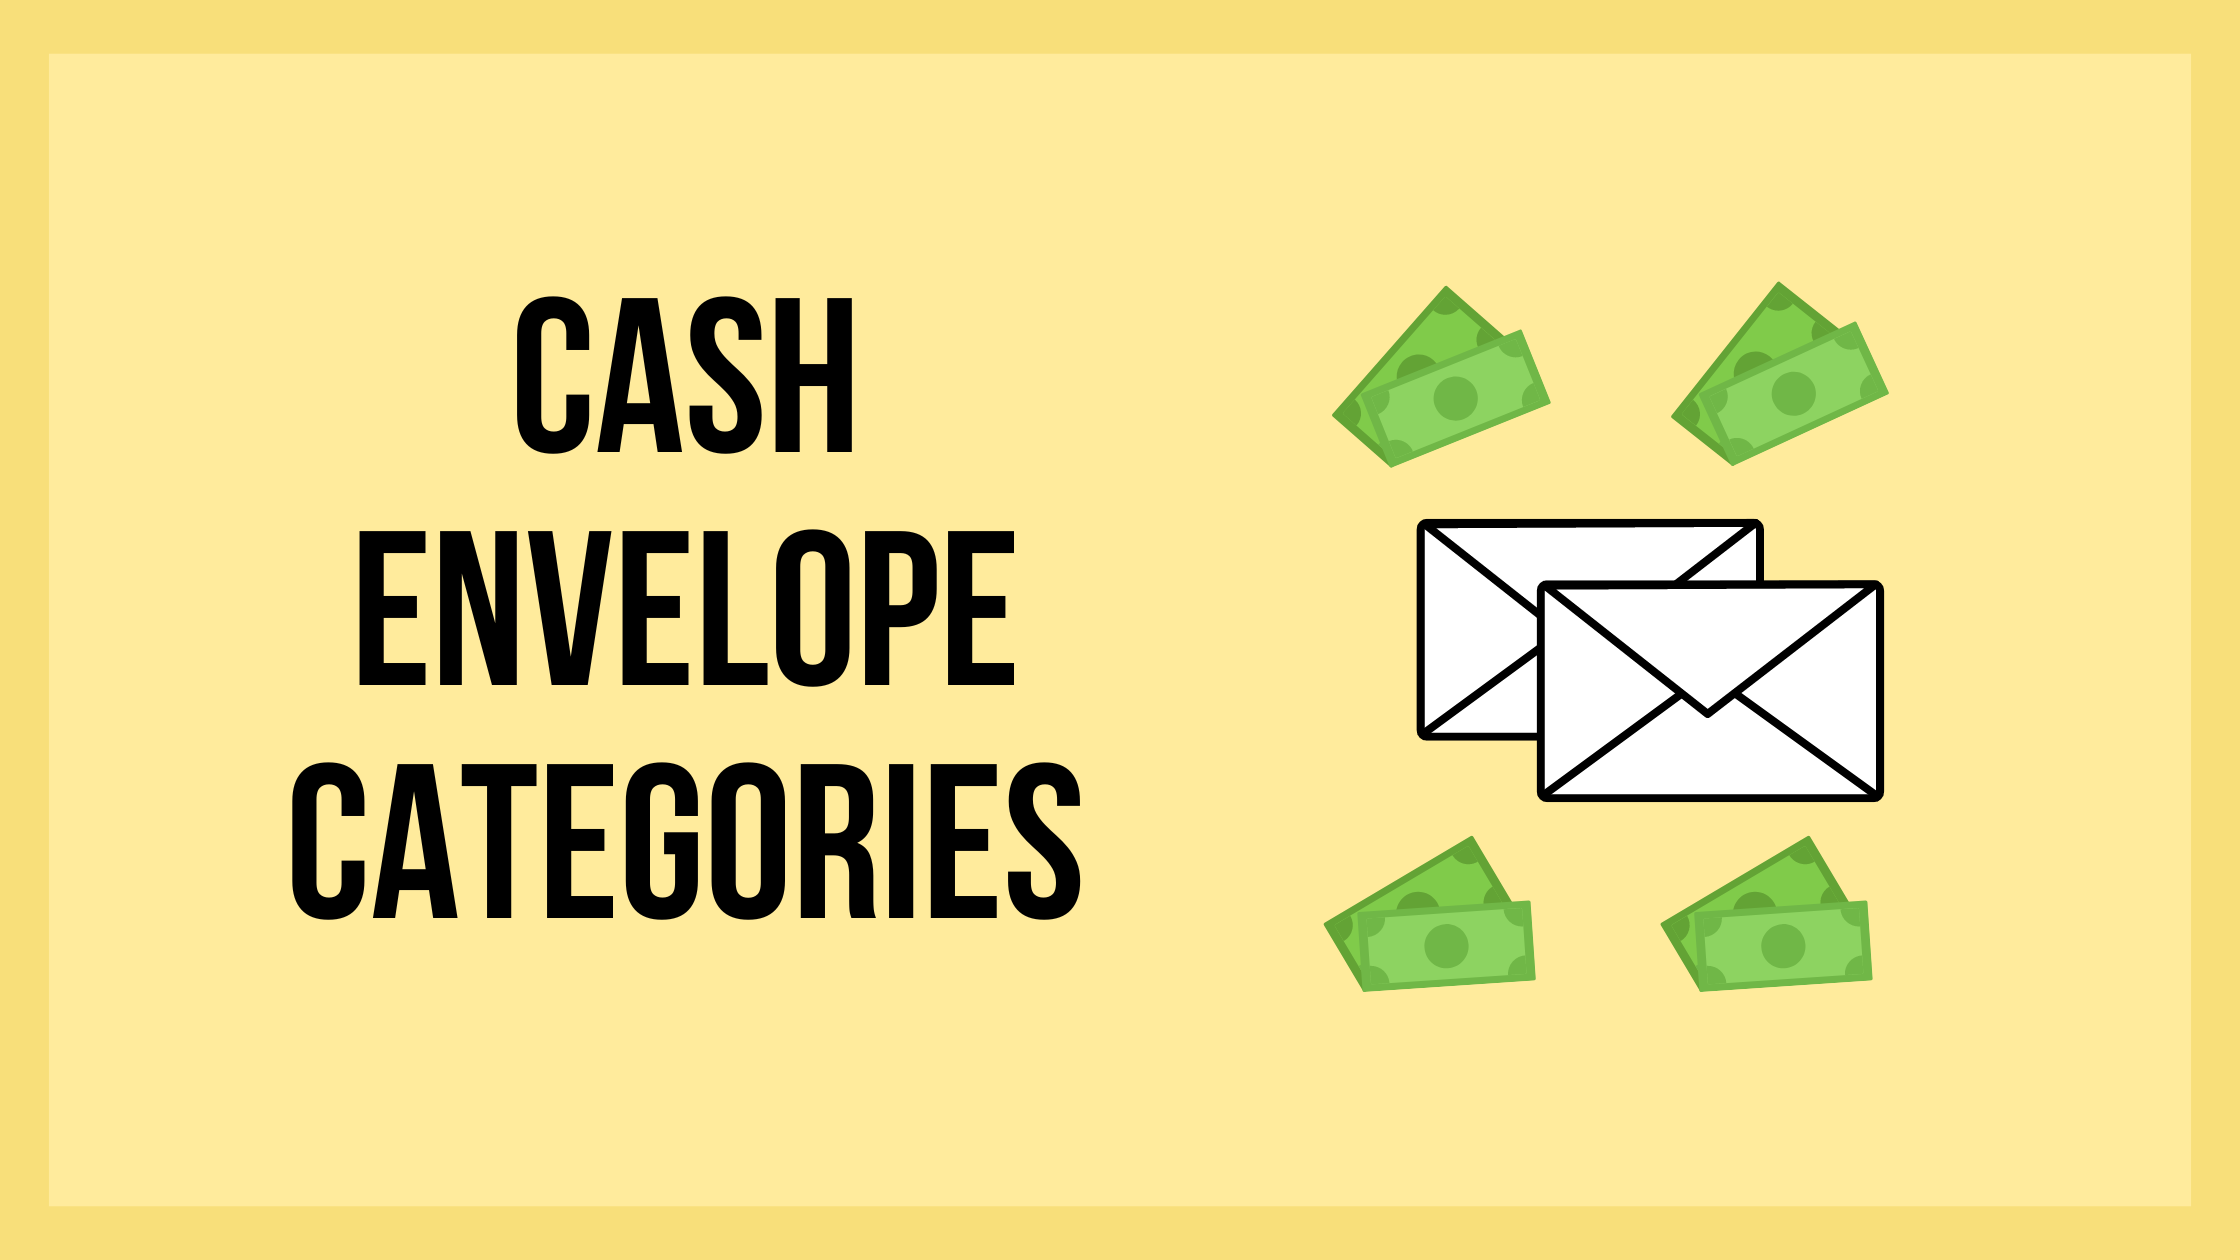 Cash envelope categories feature